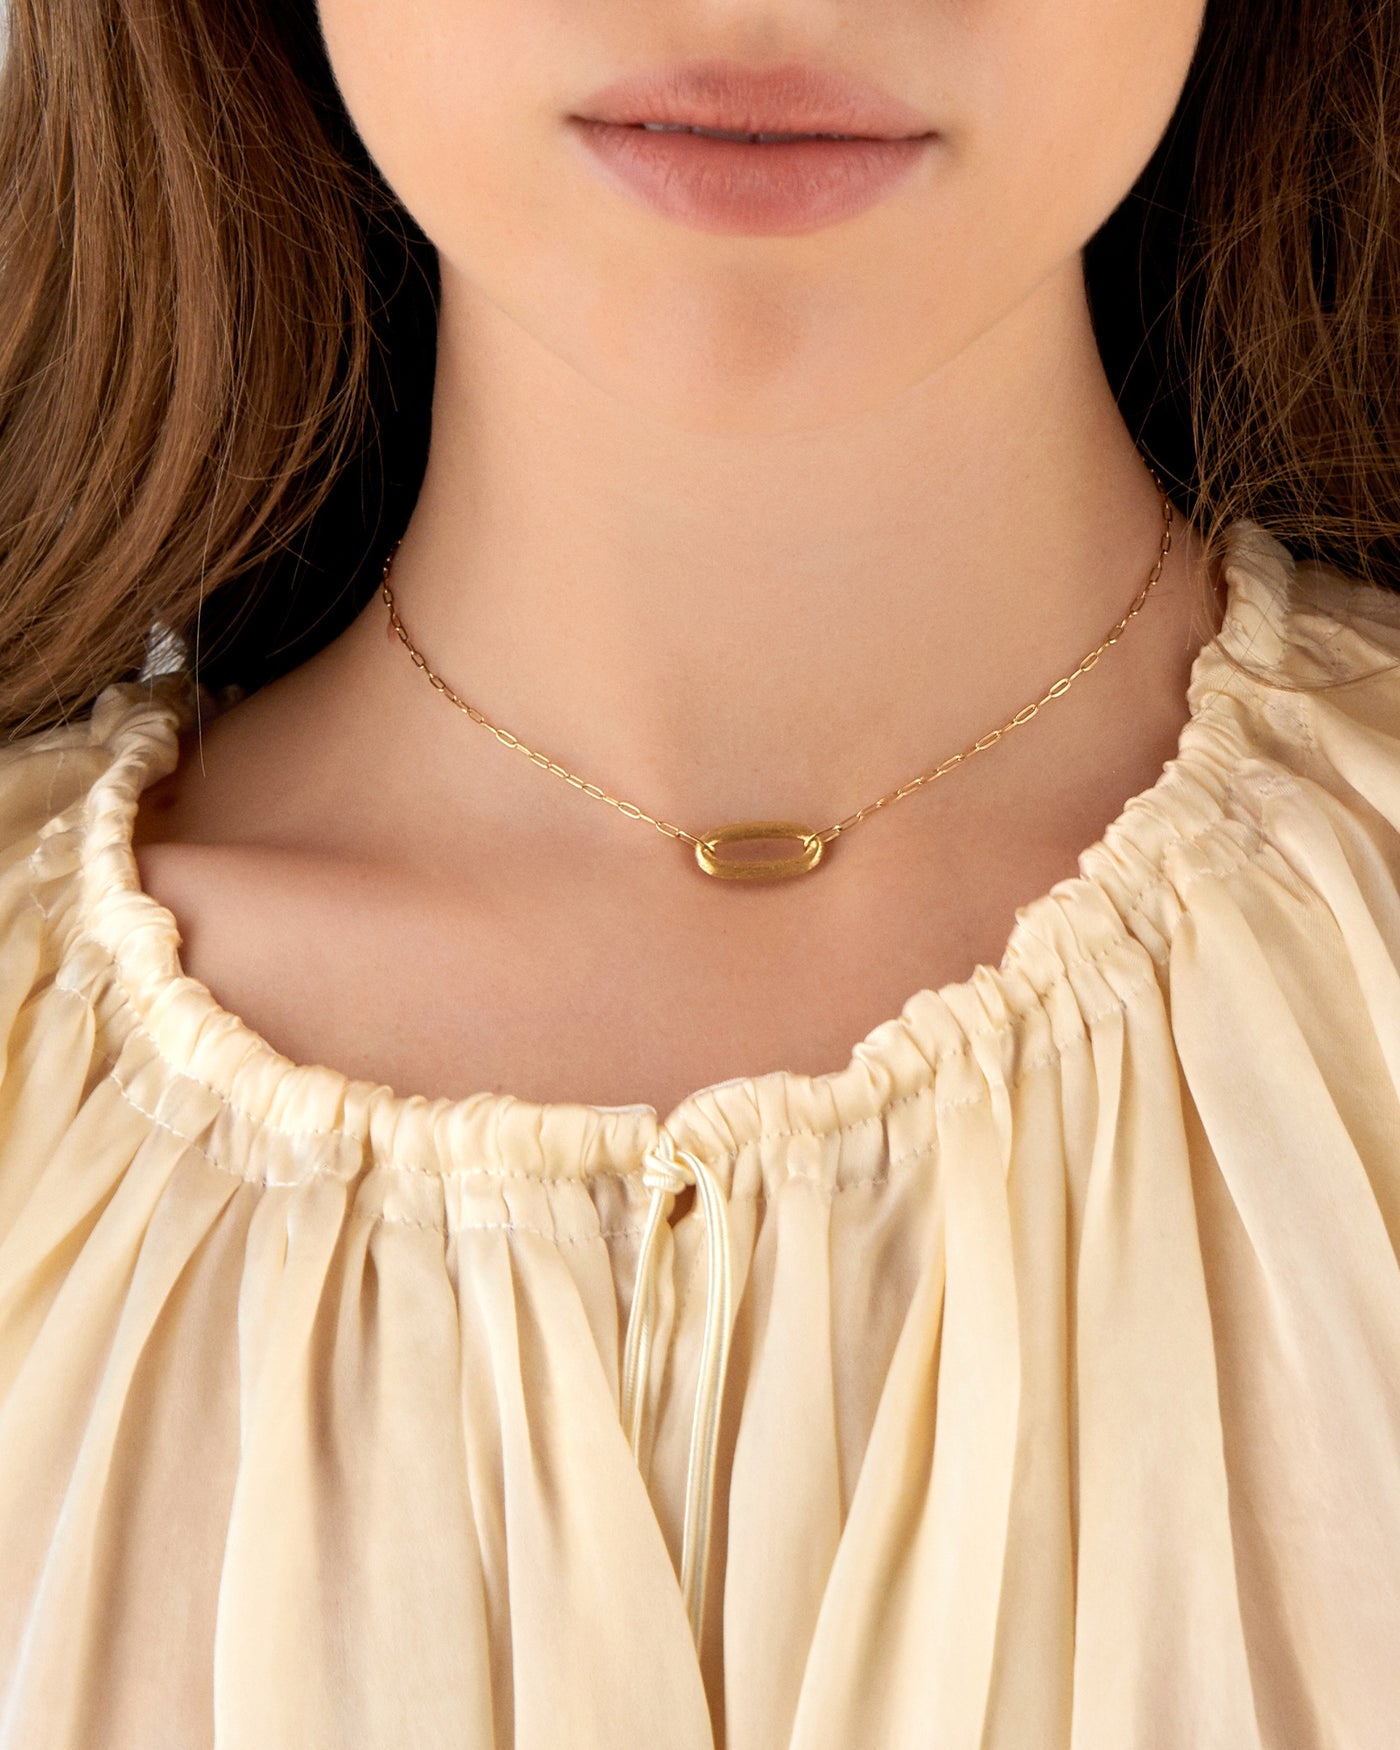 Collana "LIBERA" con anello in oro